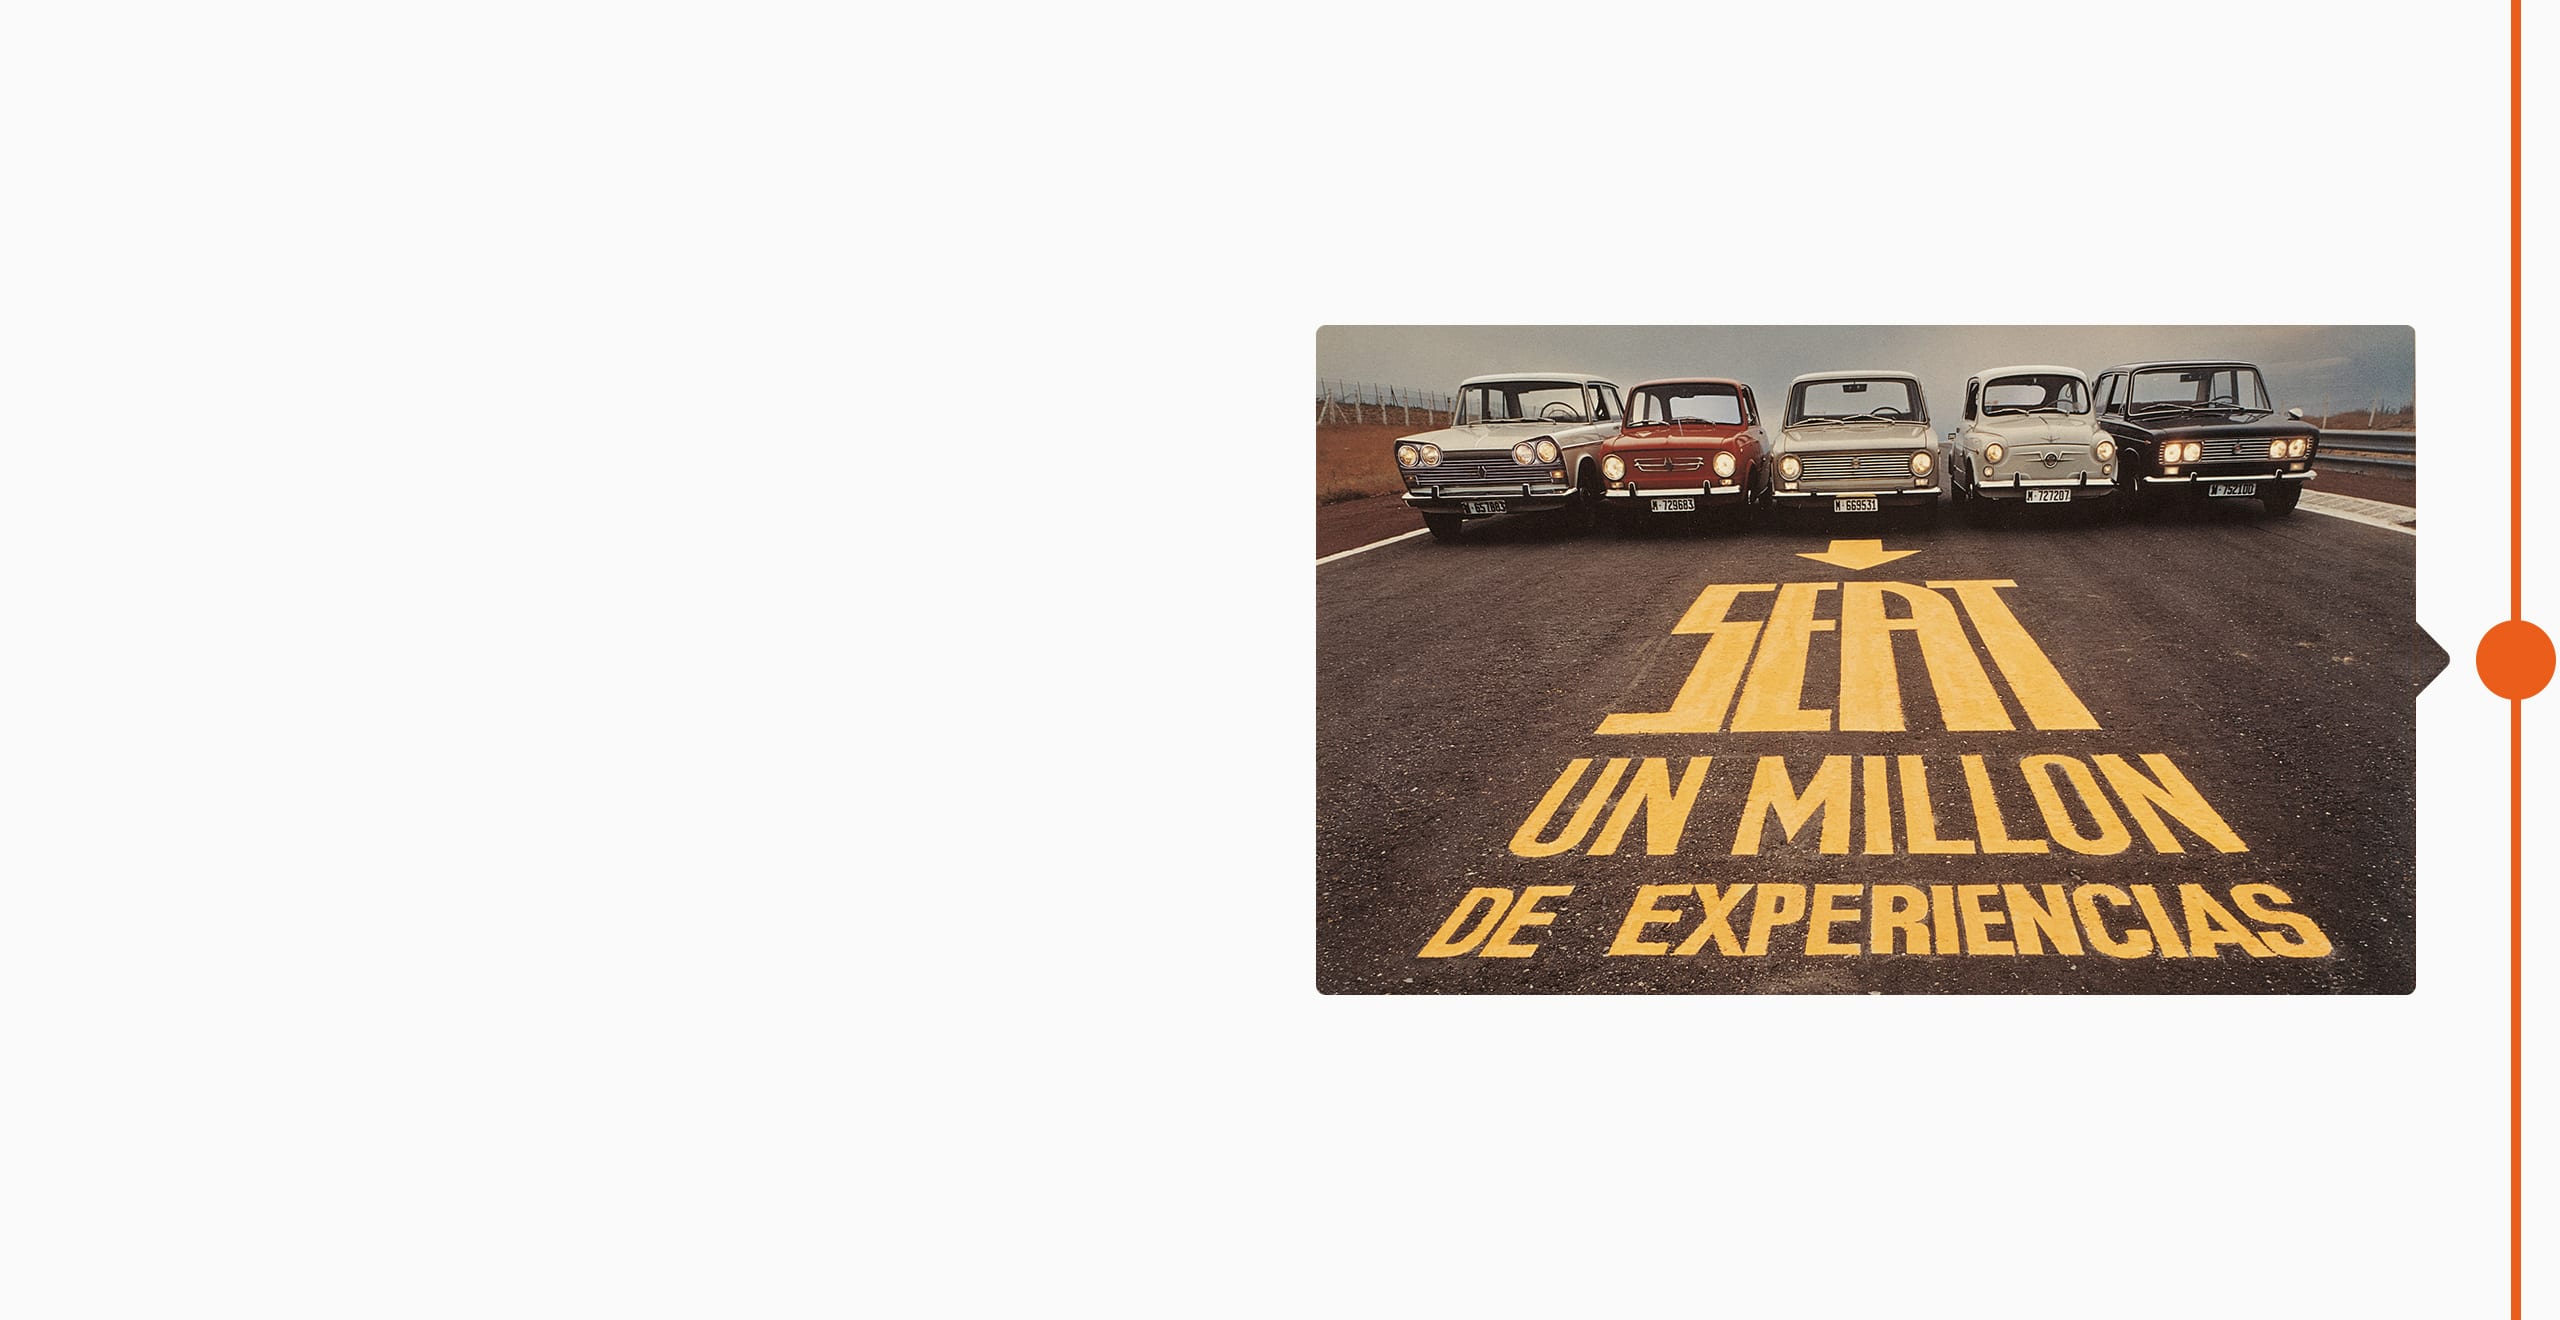 SEATi brändi ajalugu 1974 - viis klassikalist autot on tänaval rivis